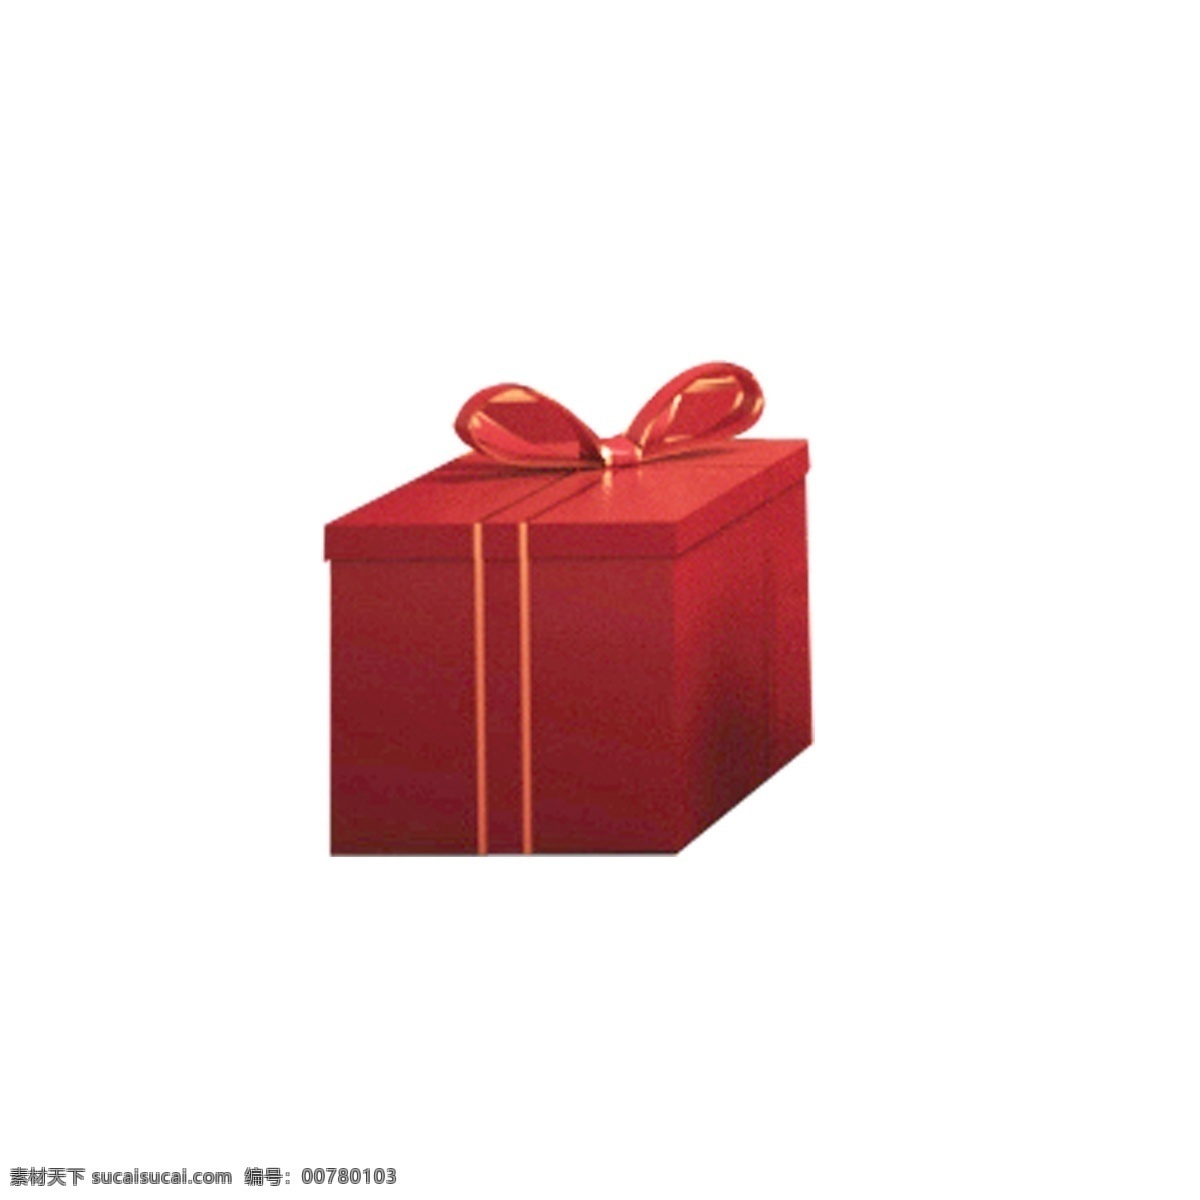 红色 礼盒 免 抠 图 时尚包装 卡通图案 卡通插画 礼盒包装盒子 小盒子 包装 红色的礼盒 免抠图